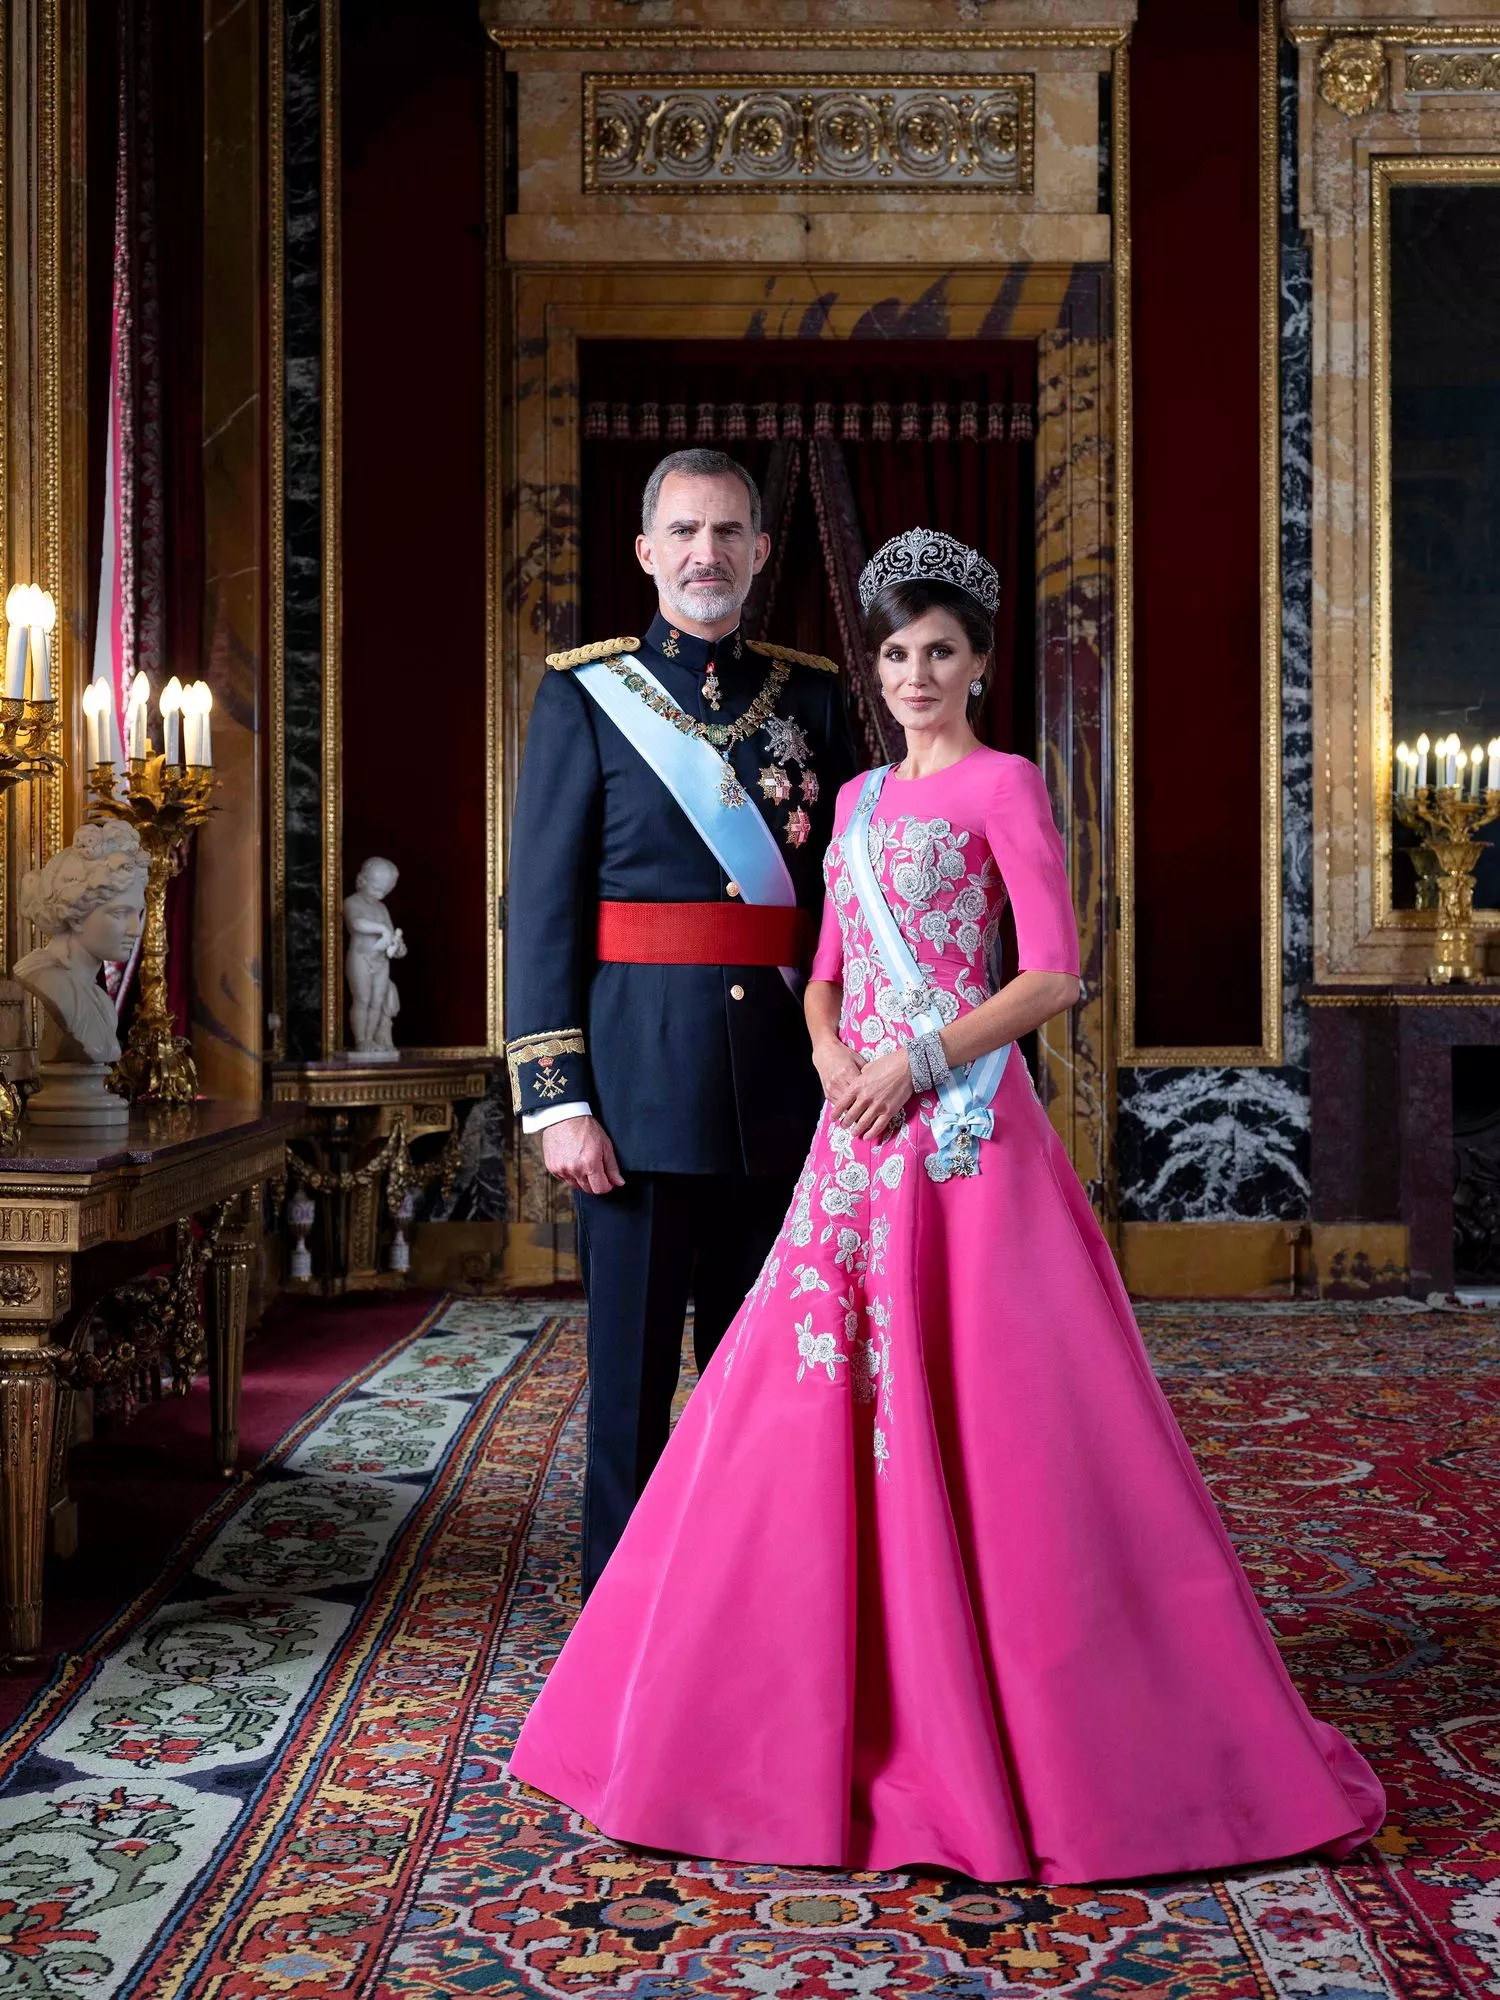 Kuningas Felipe VI ja kuningatar Letizia edustavat vihreiden arvojensa ja liberaaliutensa vuoksi modernia Espanjaa.